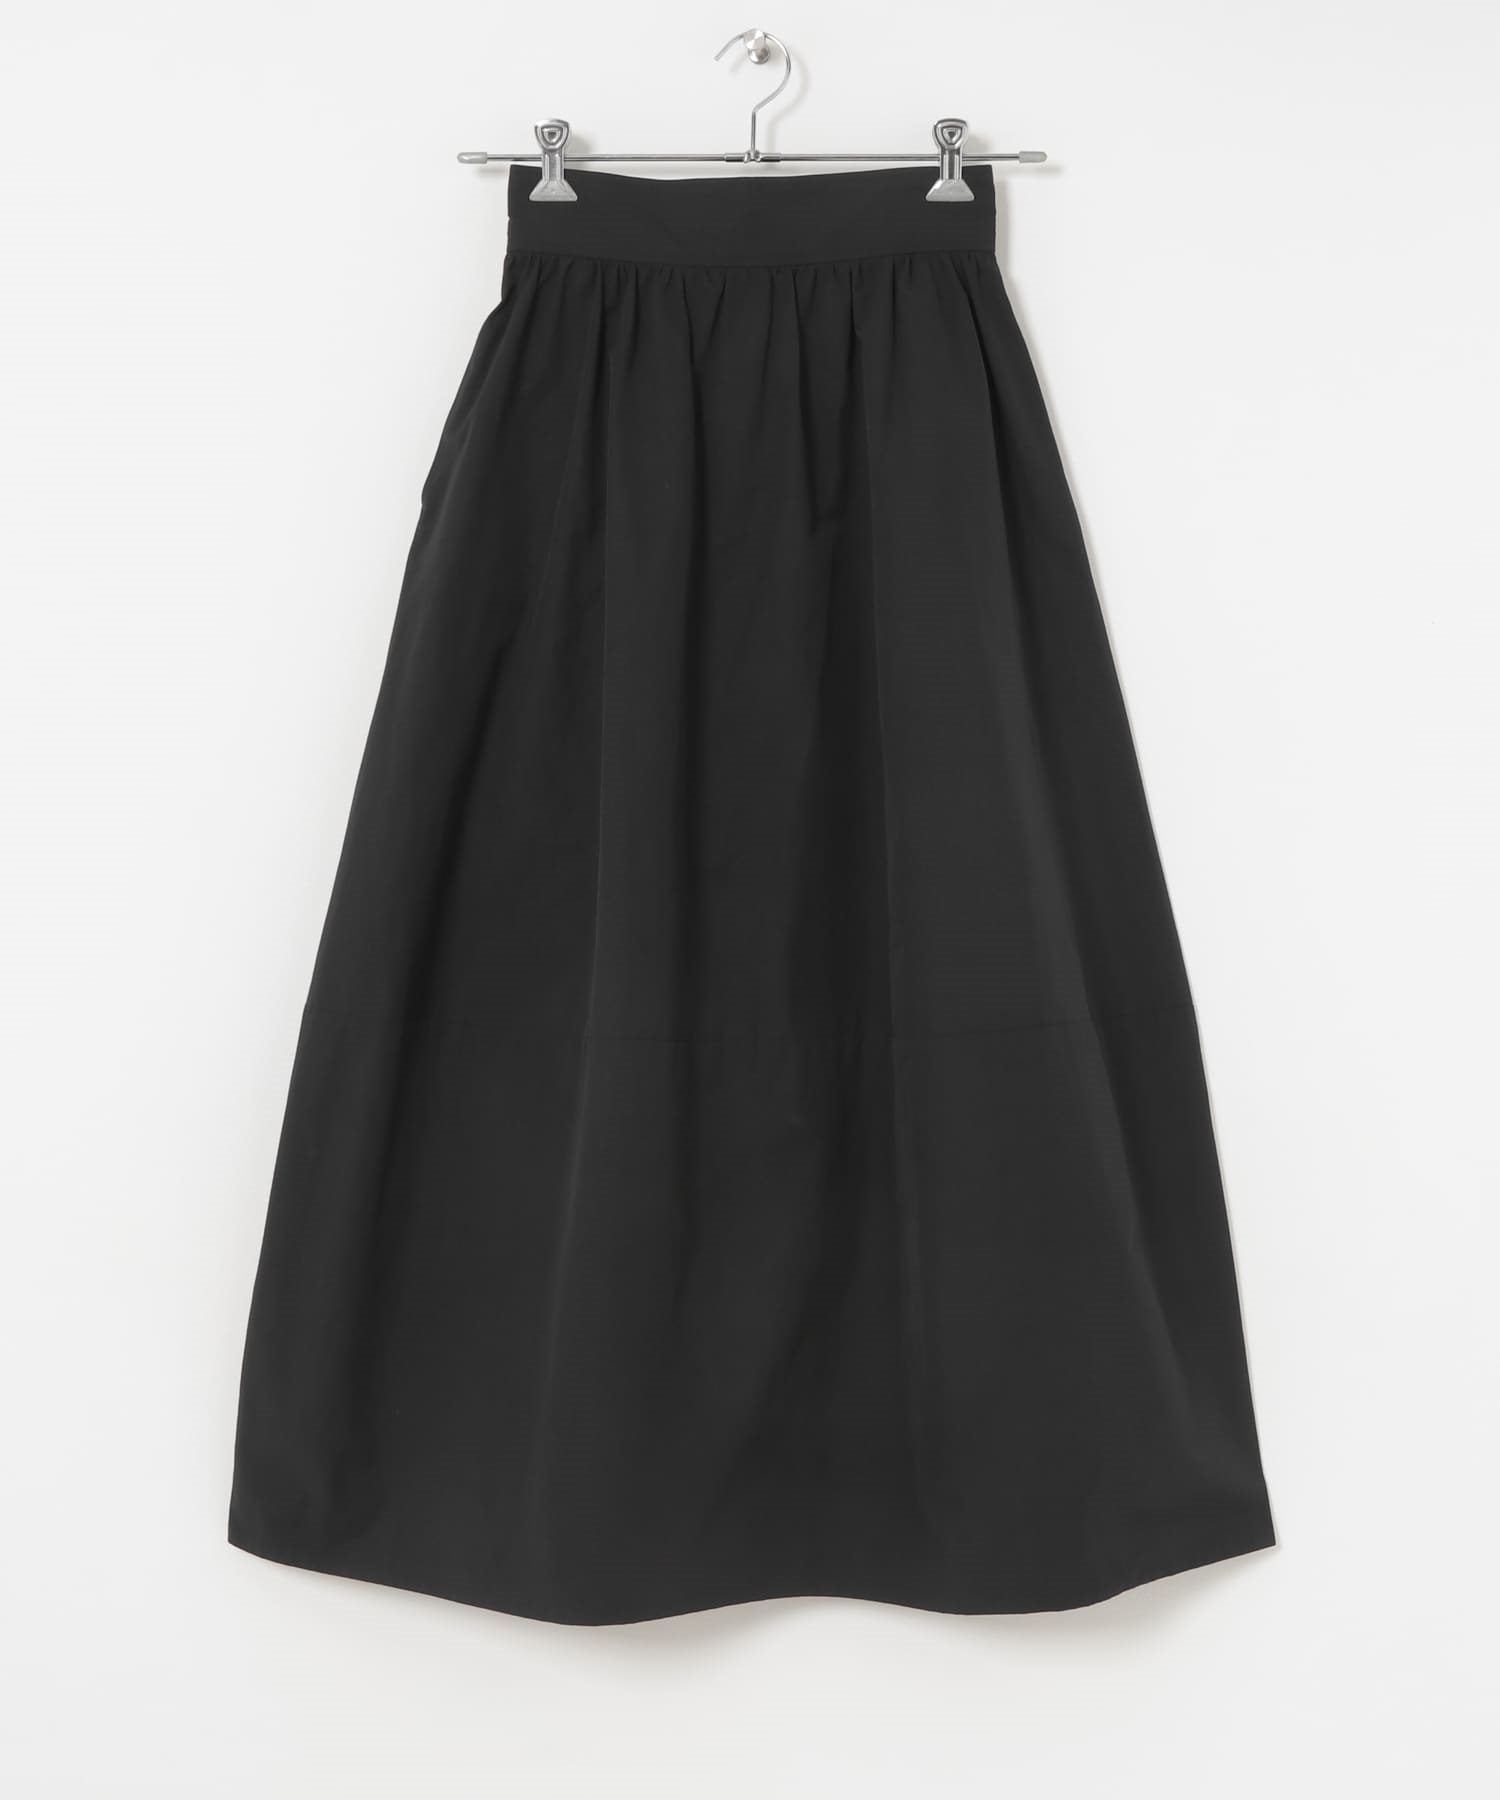 繭型及踝長裙(黑色-FREE-BLACK)